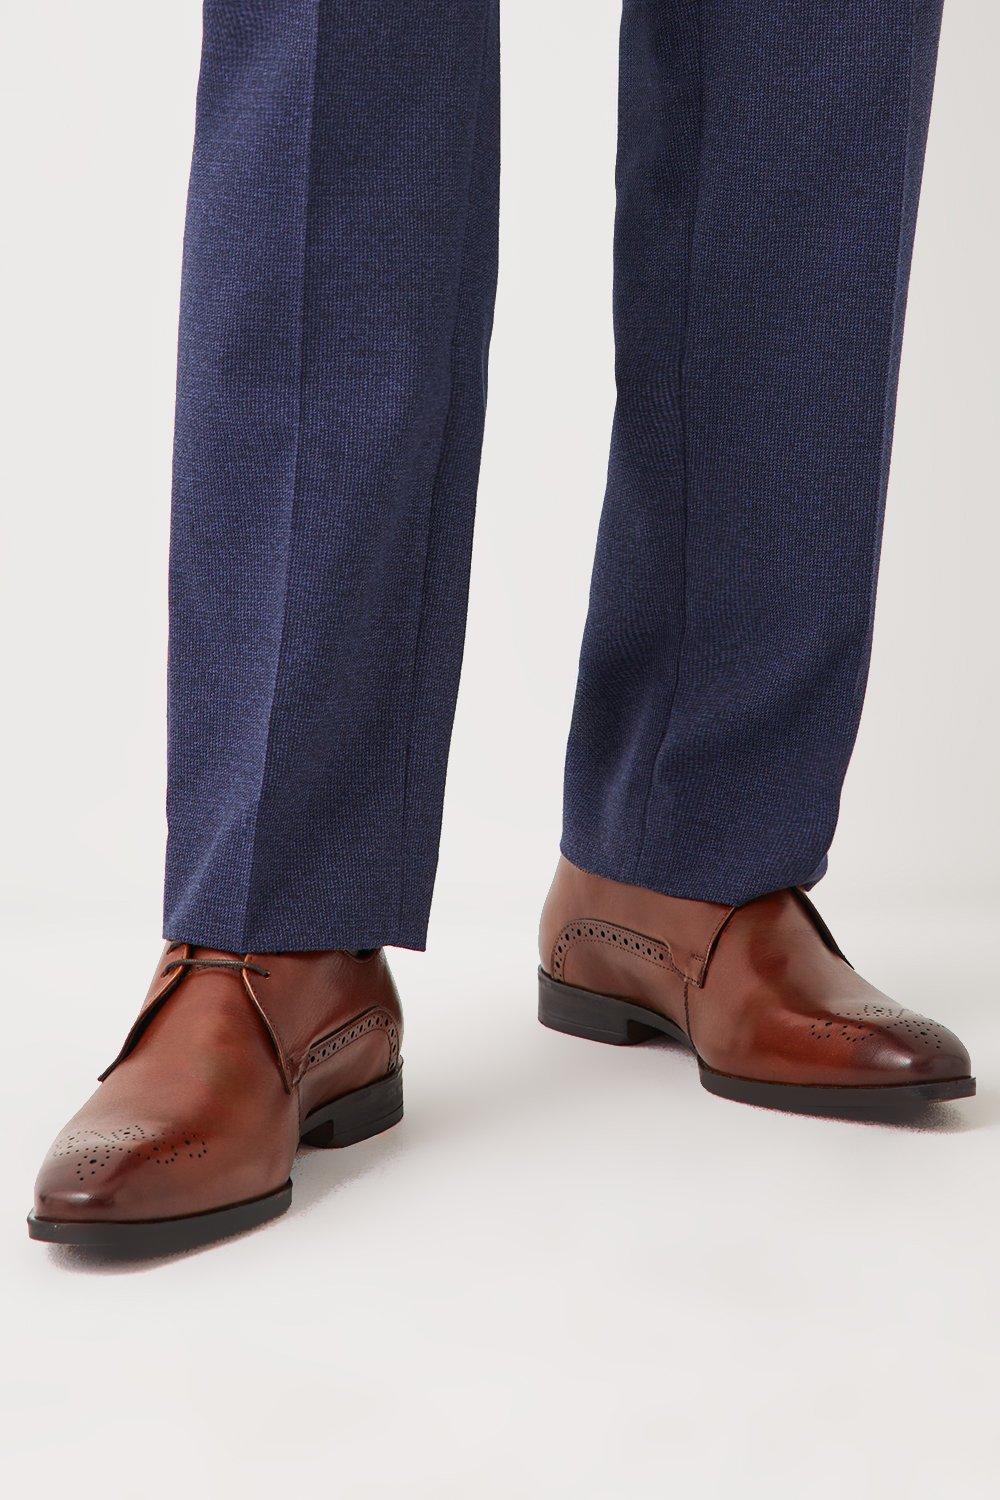 Кожаные туфли броги Prospect на шнуровке с носком Debenhams, коричневый кожаные туфли airsoft comfort на шнуровке debenhams коричневый